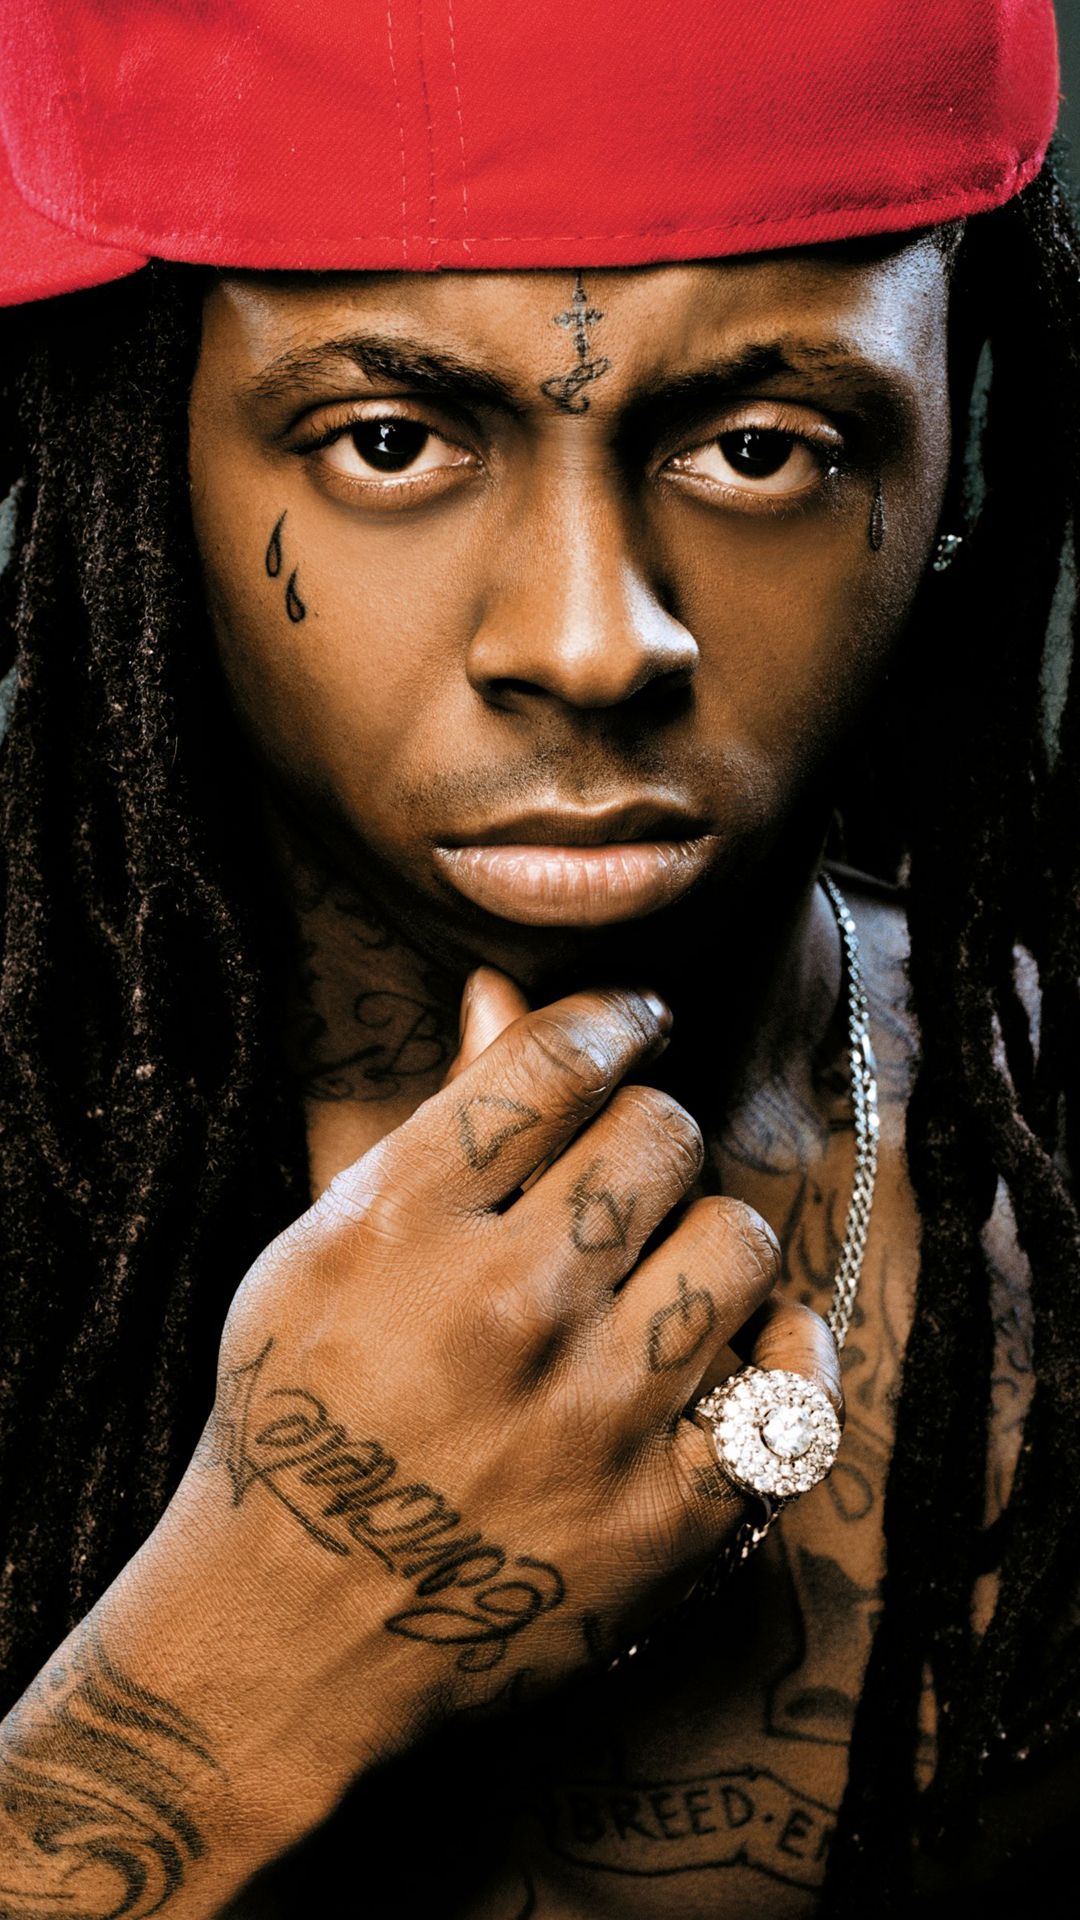 Lil Wayne htc one wallpaper. Lil wayne, Rapper lil wayne, Lil wayne news